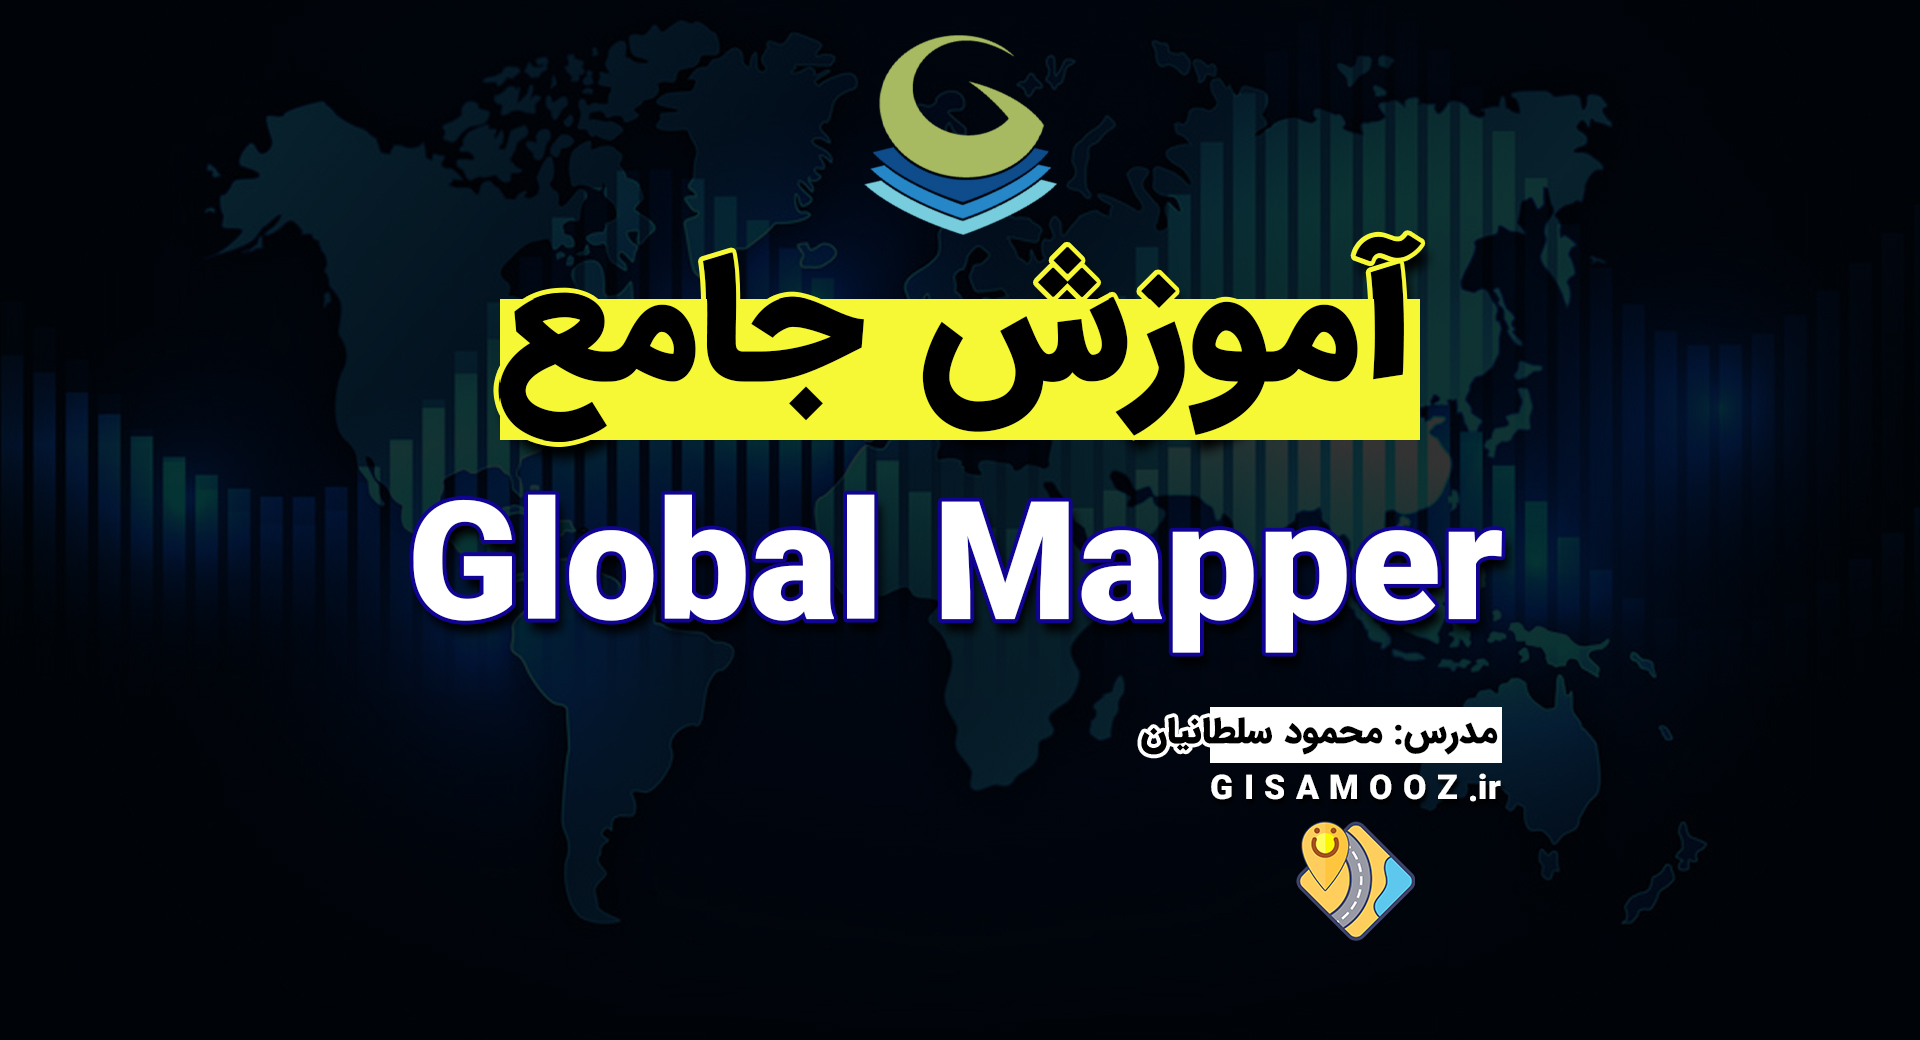 آموزش جامع گلوبال مپر Global Mapper